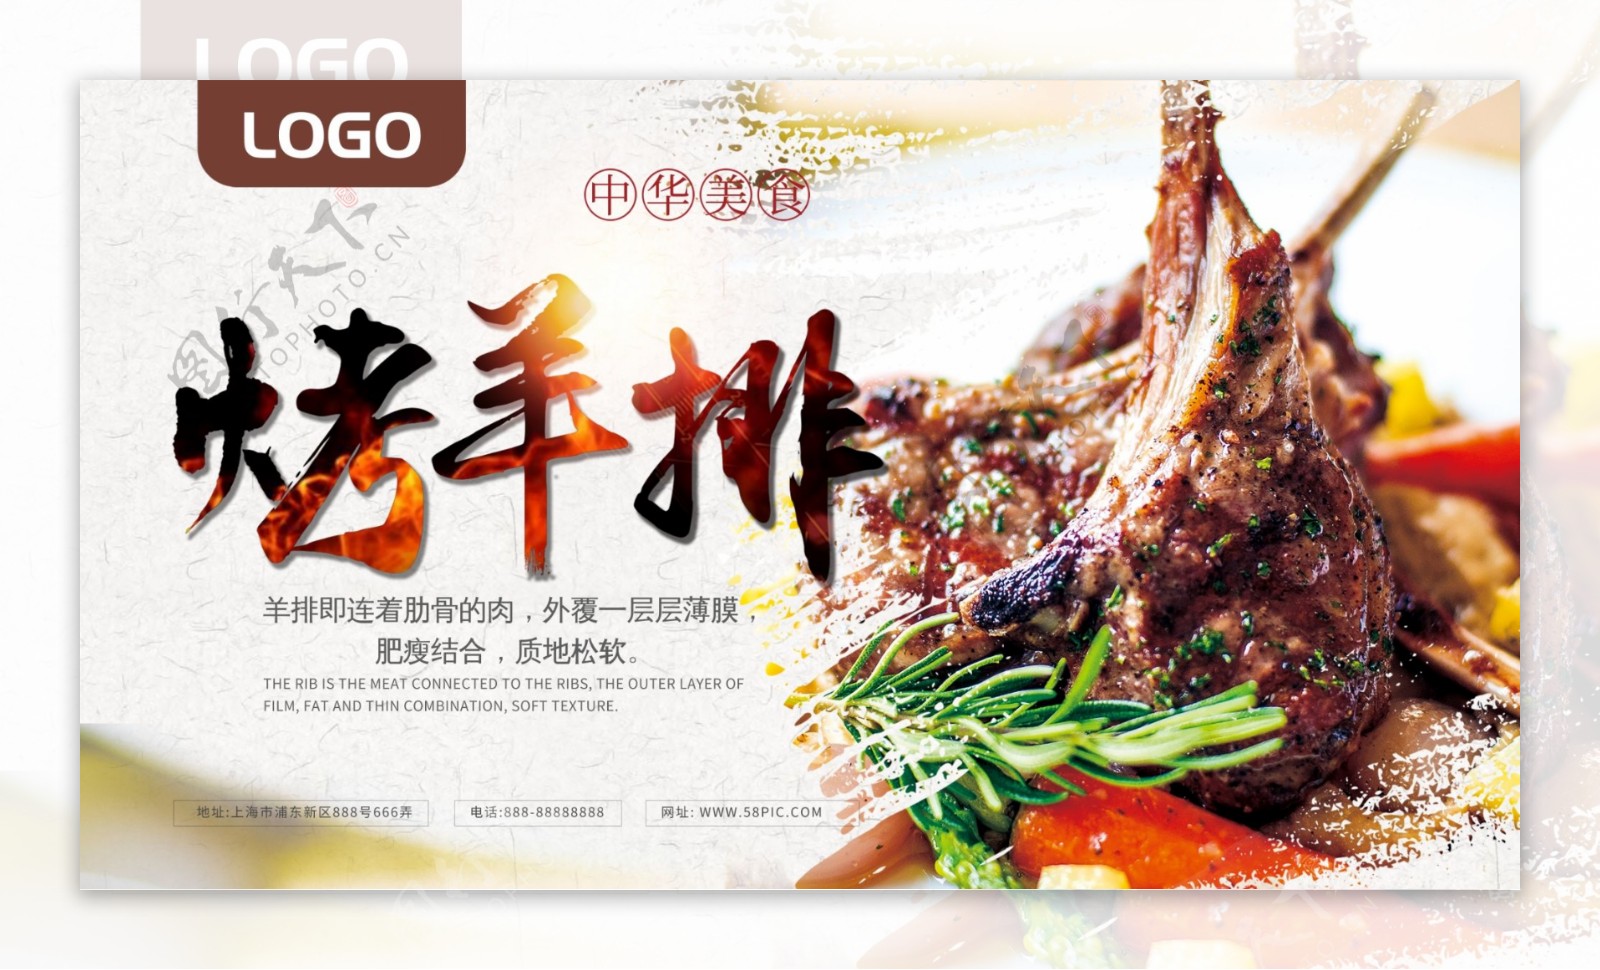 烤羊排特色中华美食餐饮海报展板